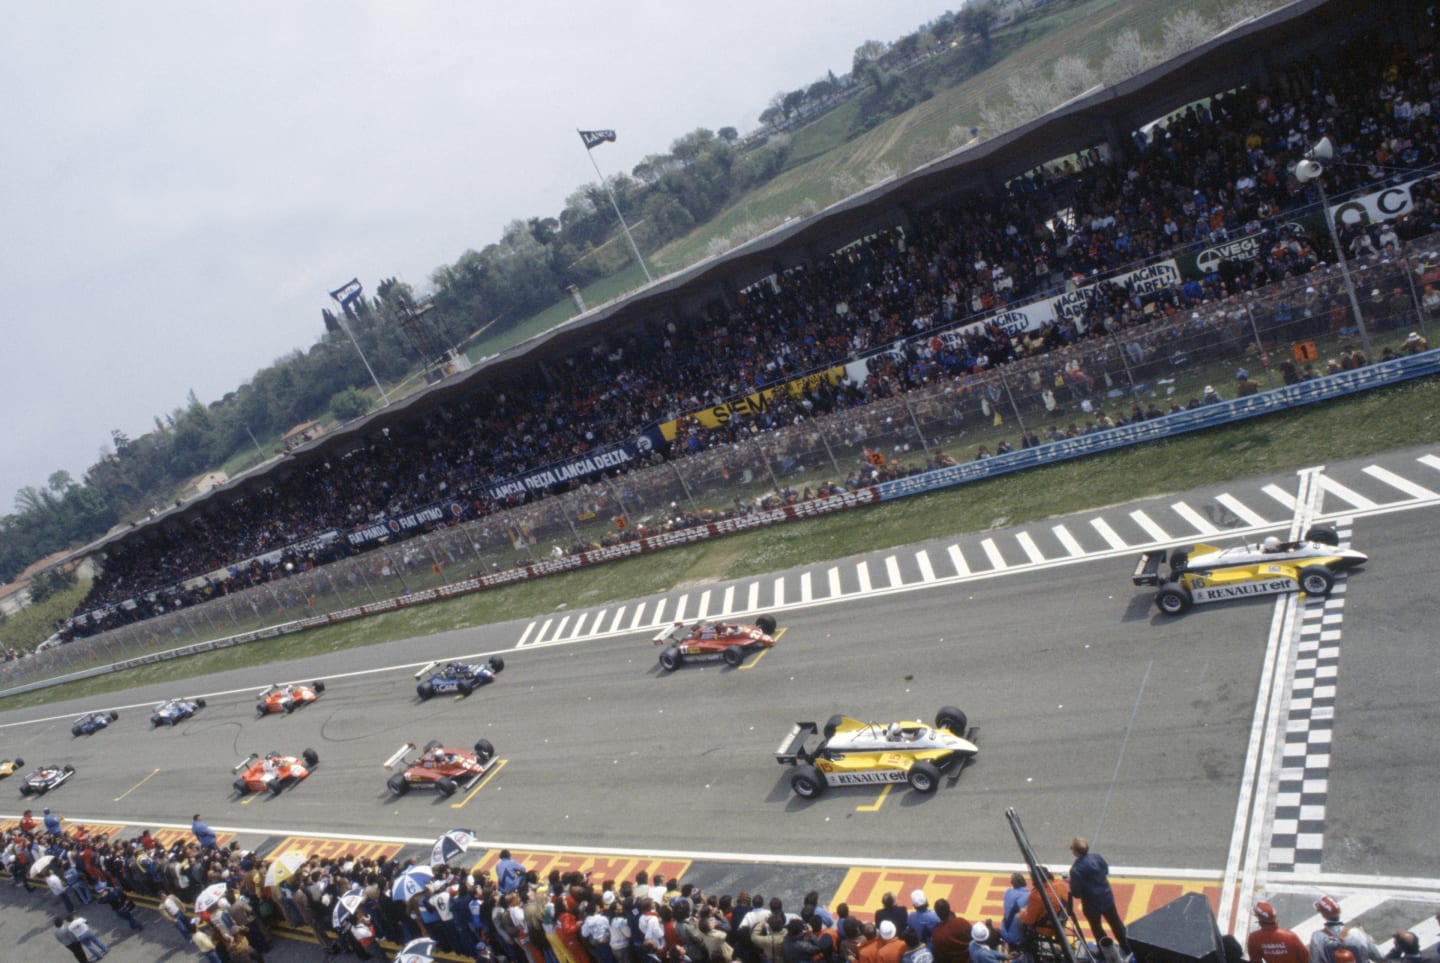 1982 San Marino Grand Prix.
Imola, Italy. 23-25 April 1982.
Rene Arnoux leads Alain Prost (both